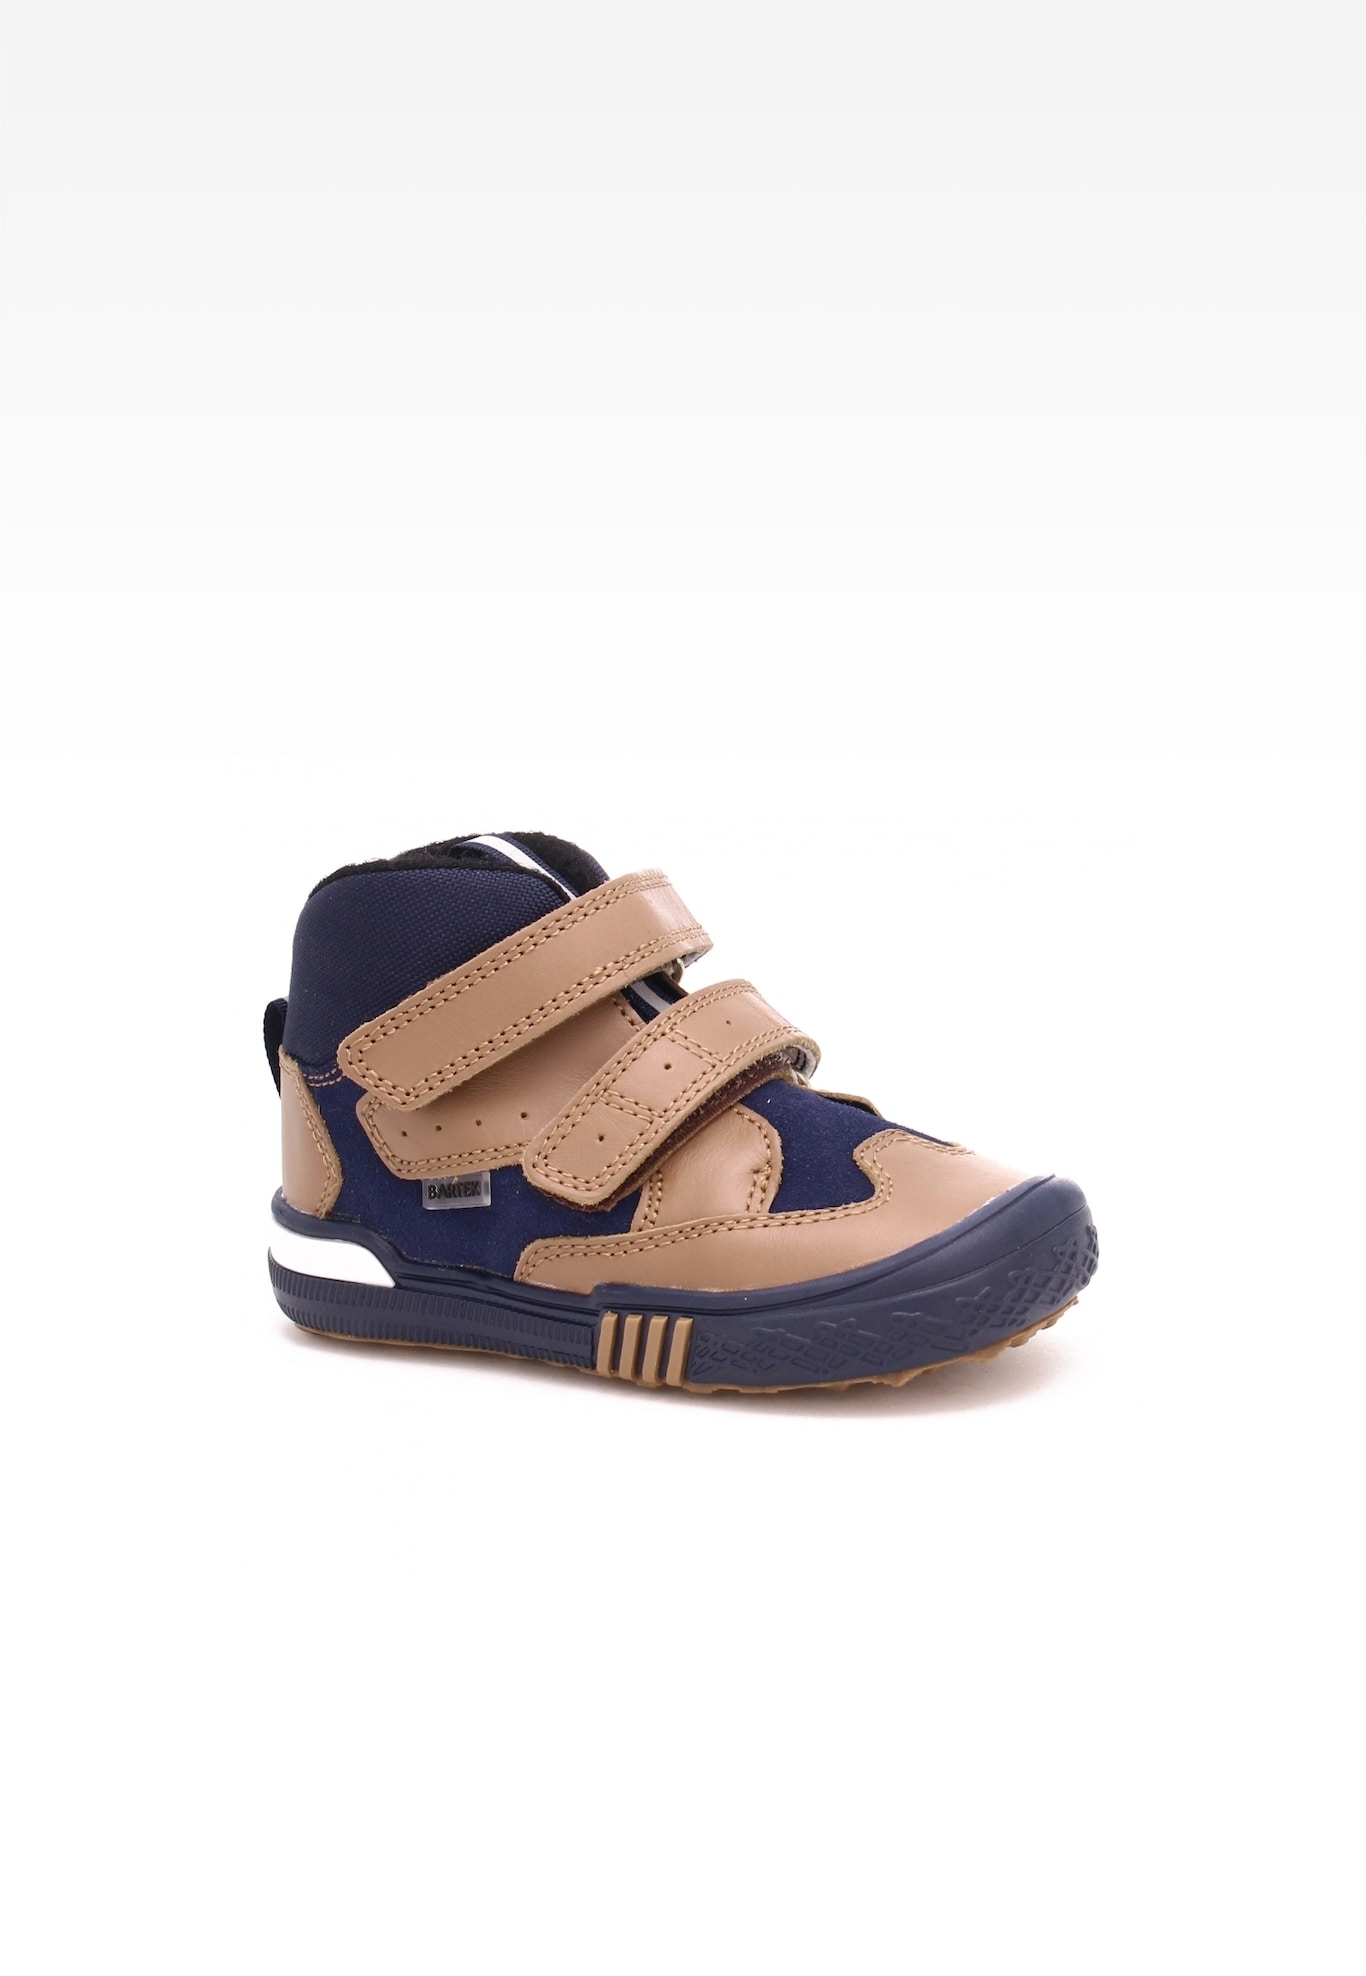 Sneakers BARTEK 21704/0P-1PF, dla chłopców, brązowo-niebieski